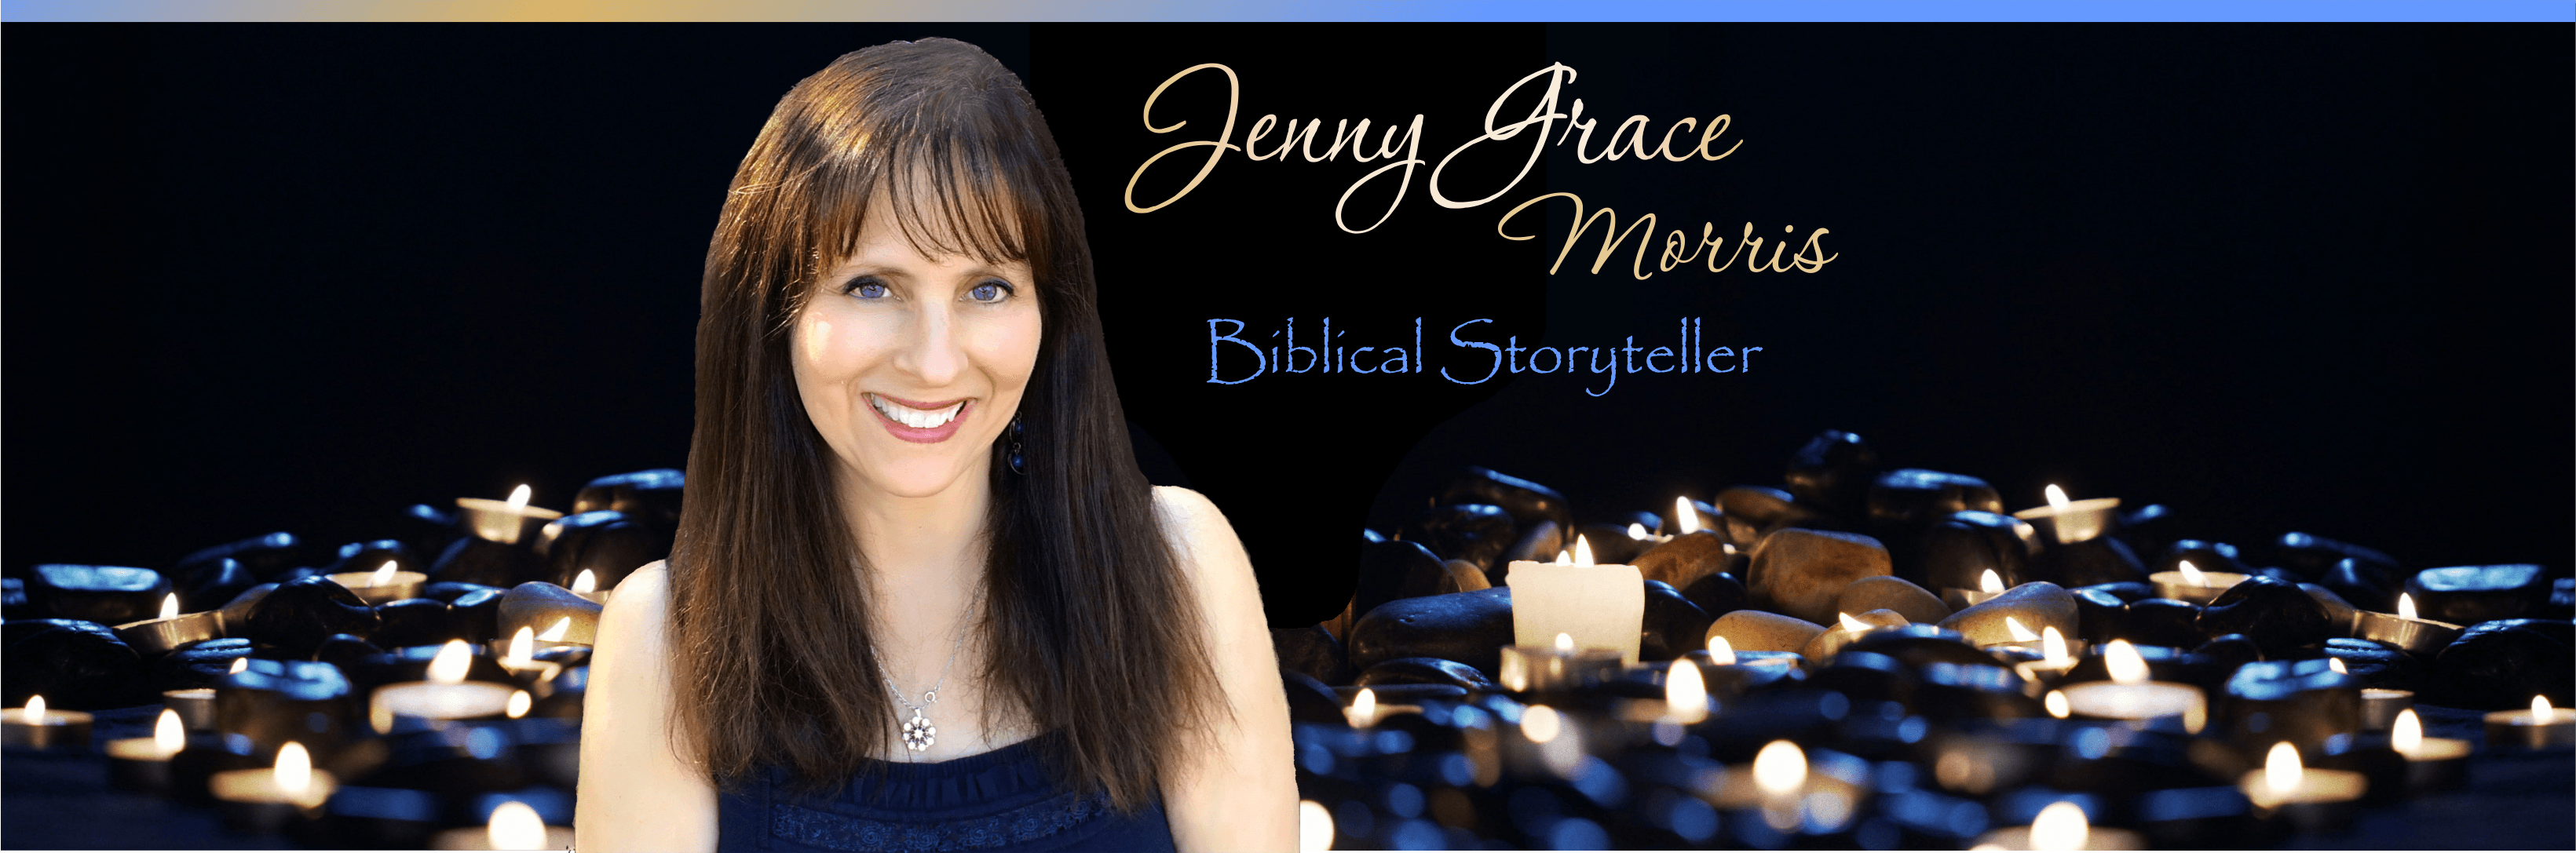 Jenny Grace Morris, Biblical Storyteller